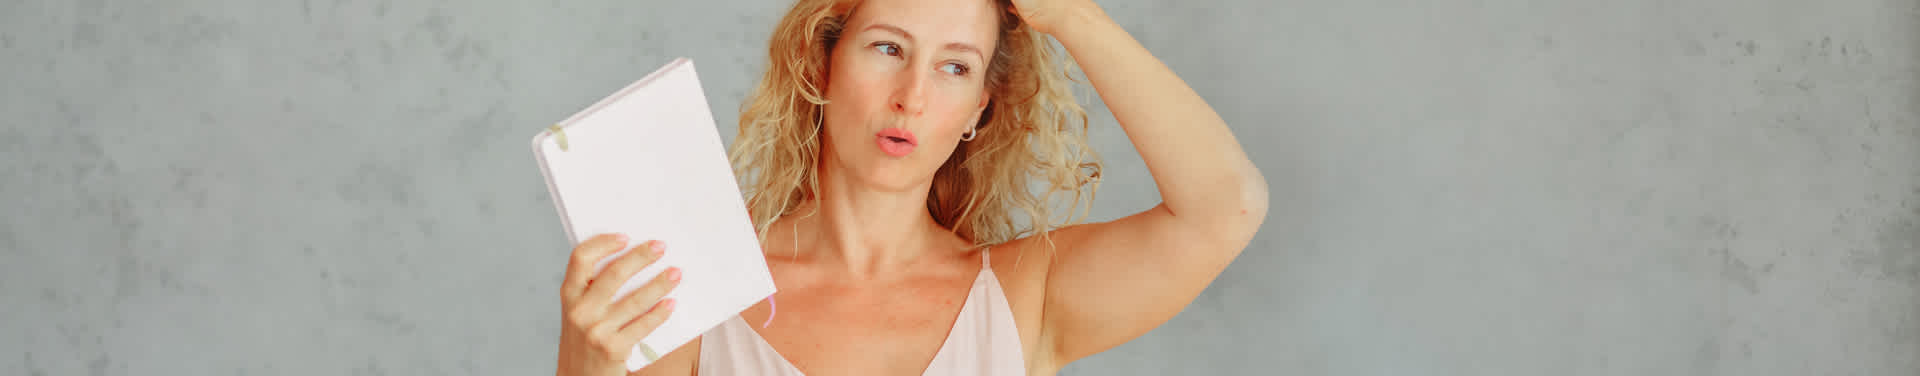 Síntomas menopausia precoz